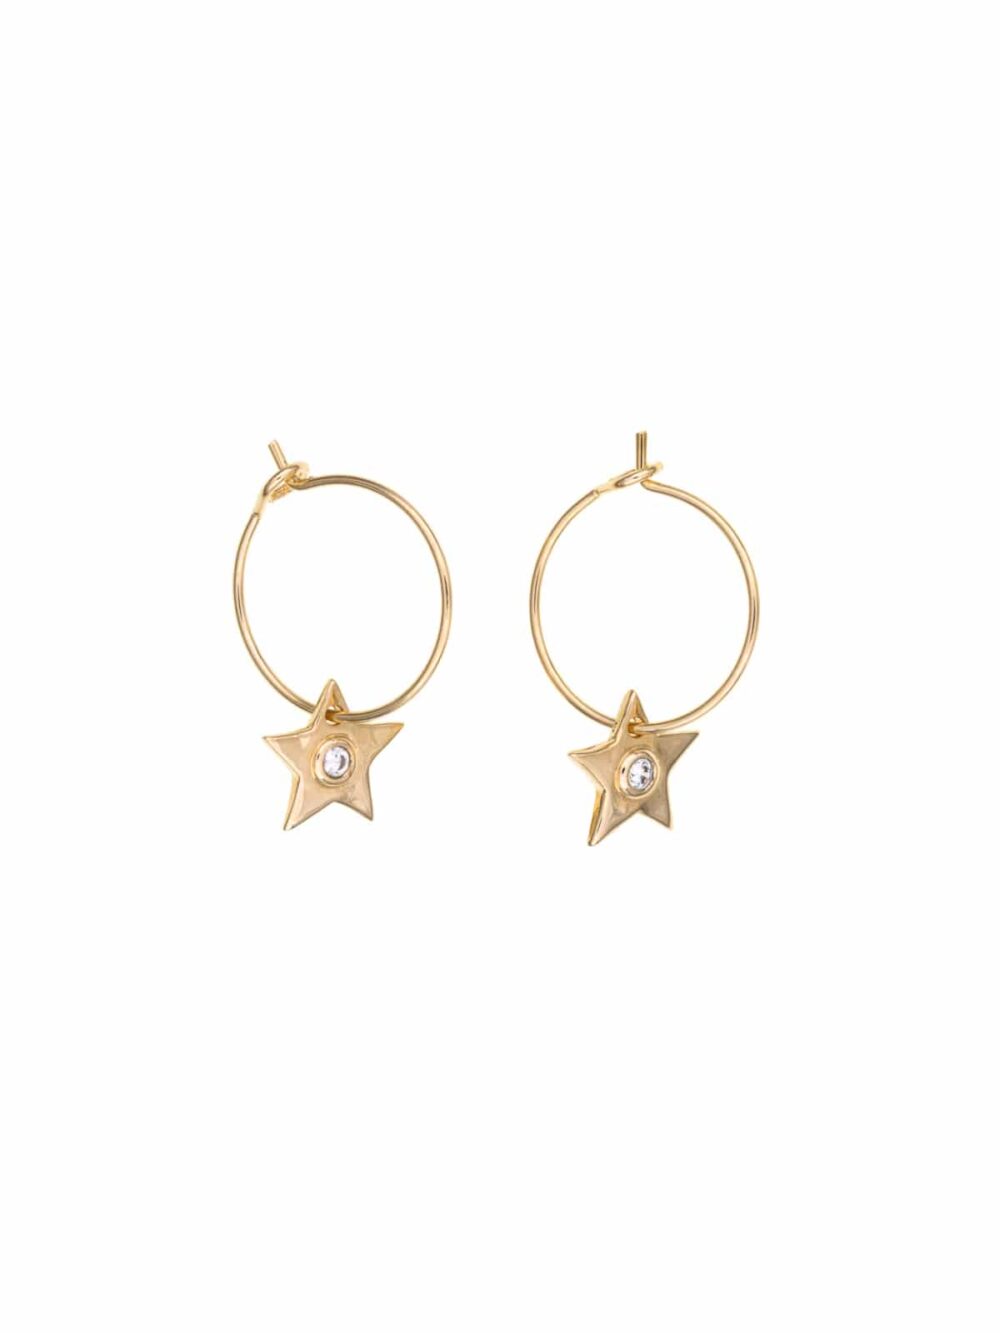 LOUISE star hoop earrings luj paris jewels